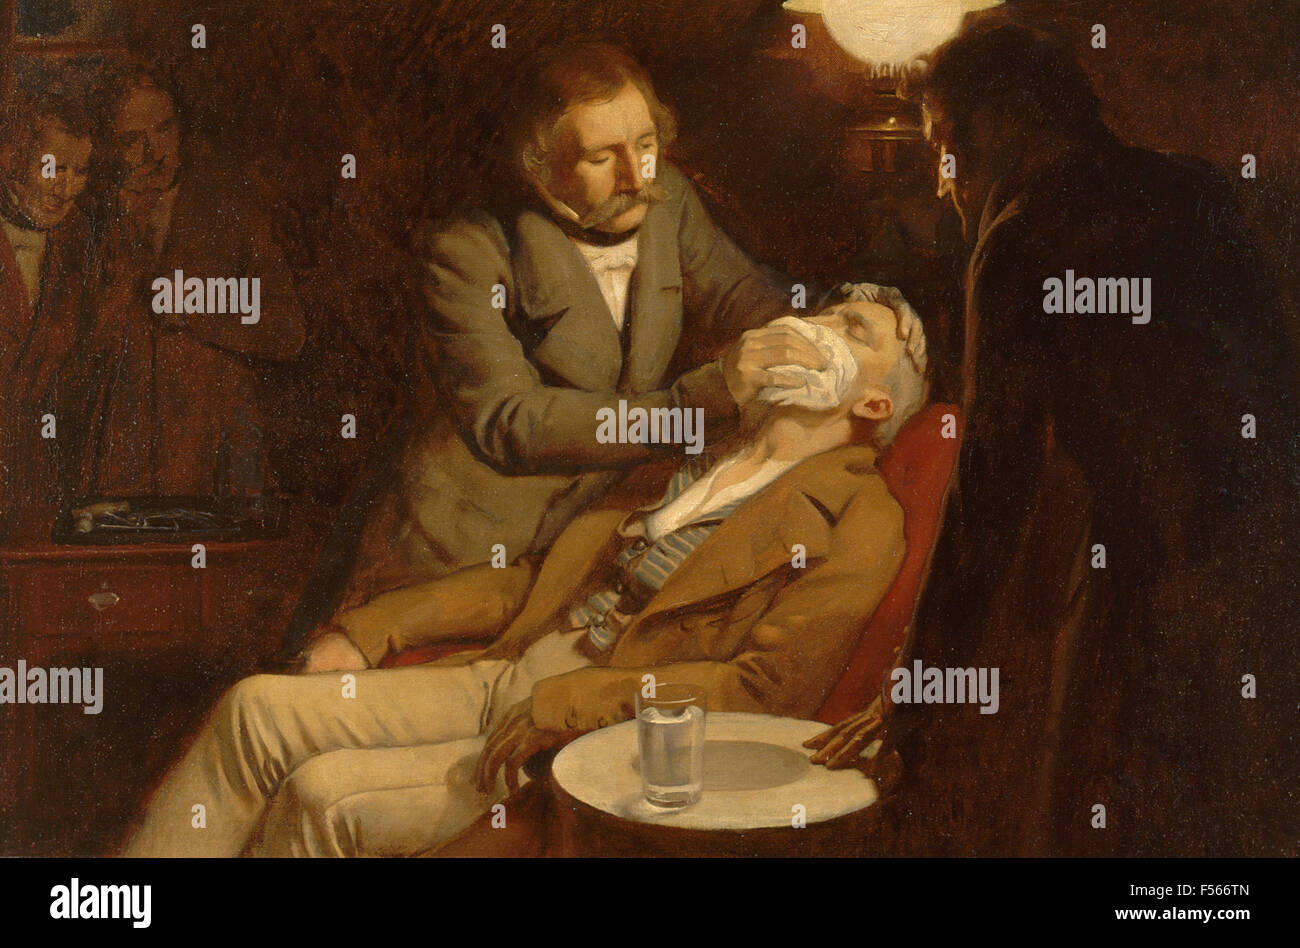 WILLIAM THOMAS MORTON (1819-1868) amerikanischer Zahnarzt gezeigt, die erste Nutzung des Äthers als Narkosemittel 1846. Stockfoto